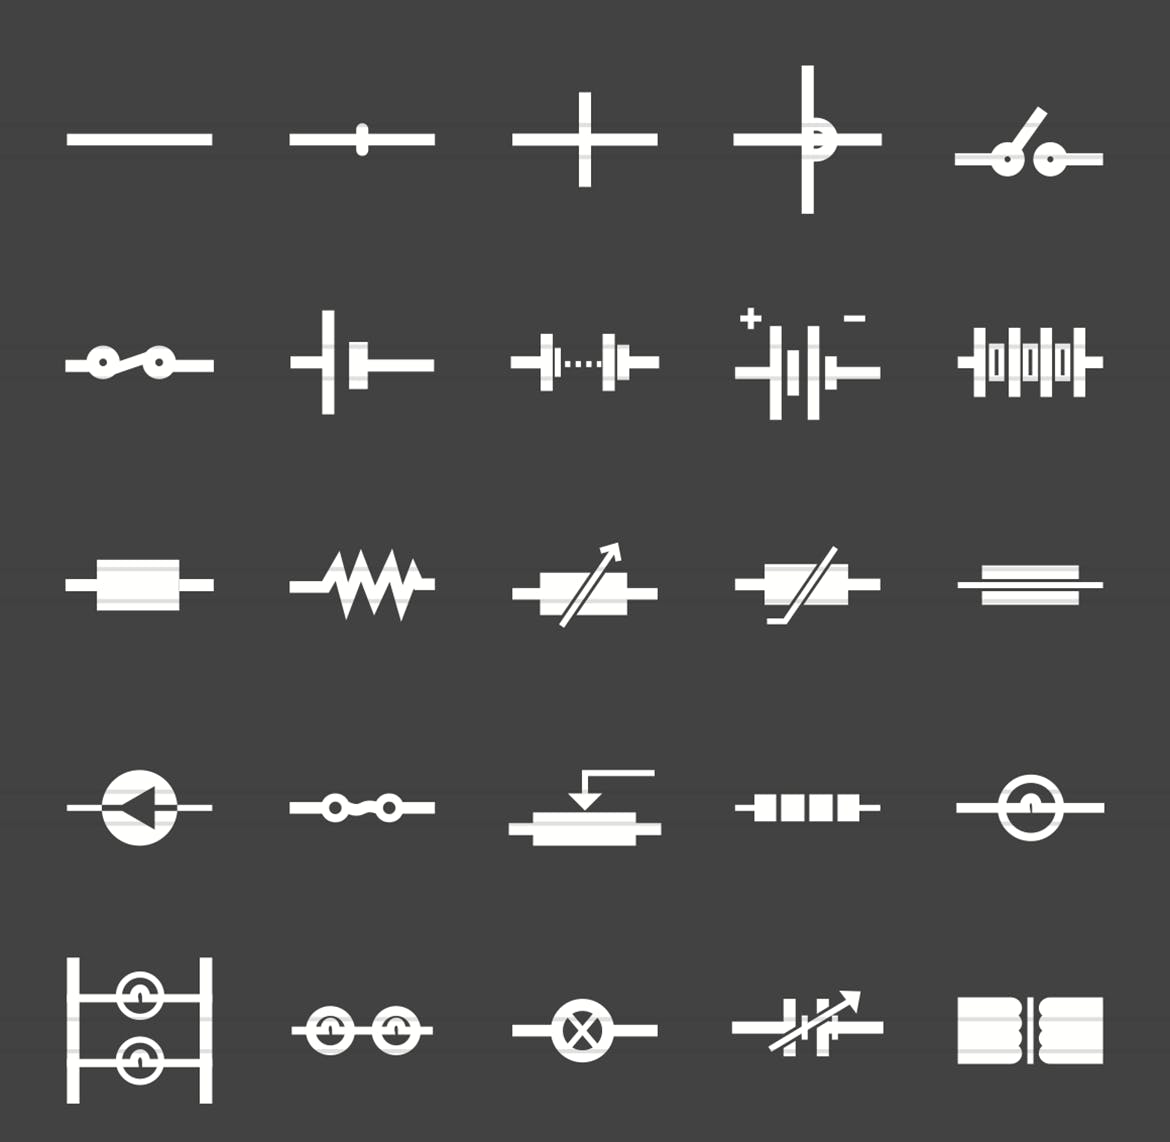 50枚电路线路板主题反转色字体素材天下精选图标 50 Electric Circuits Glyph Inverted Icons插图(1)